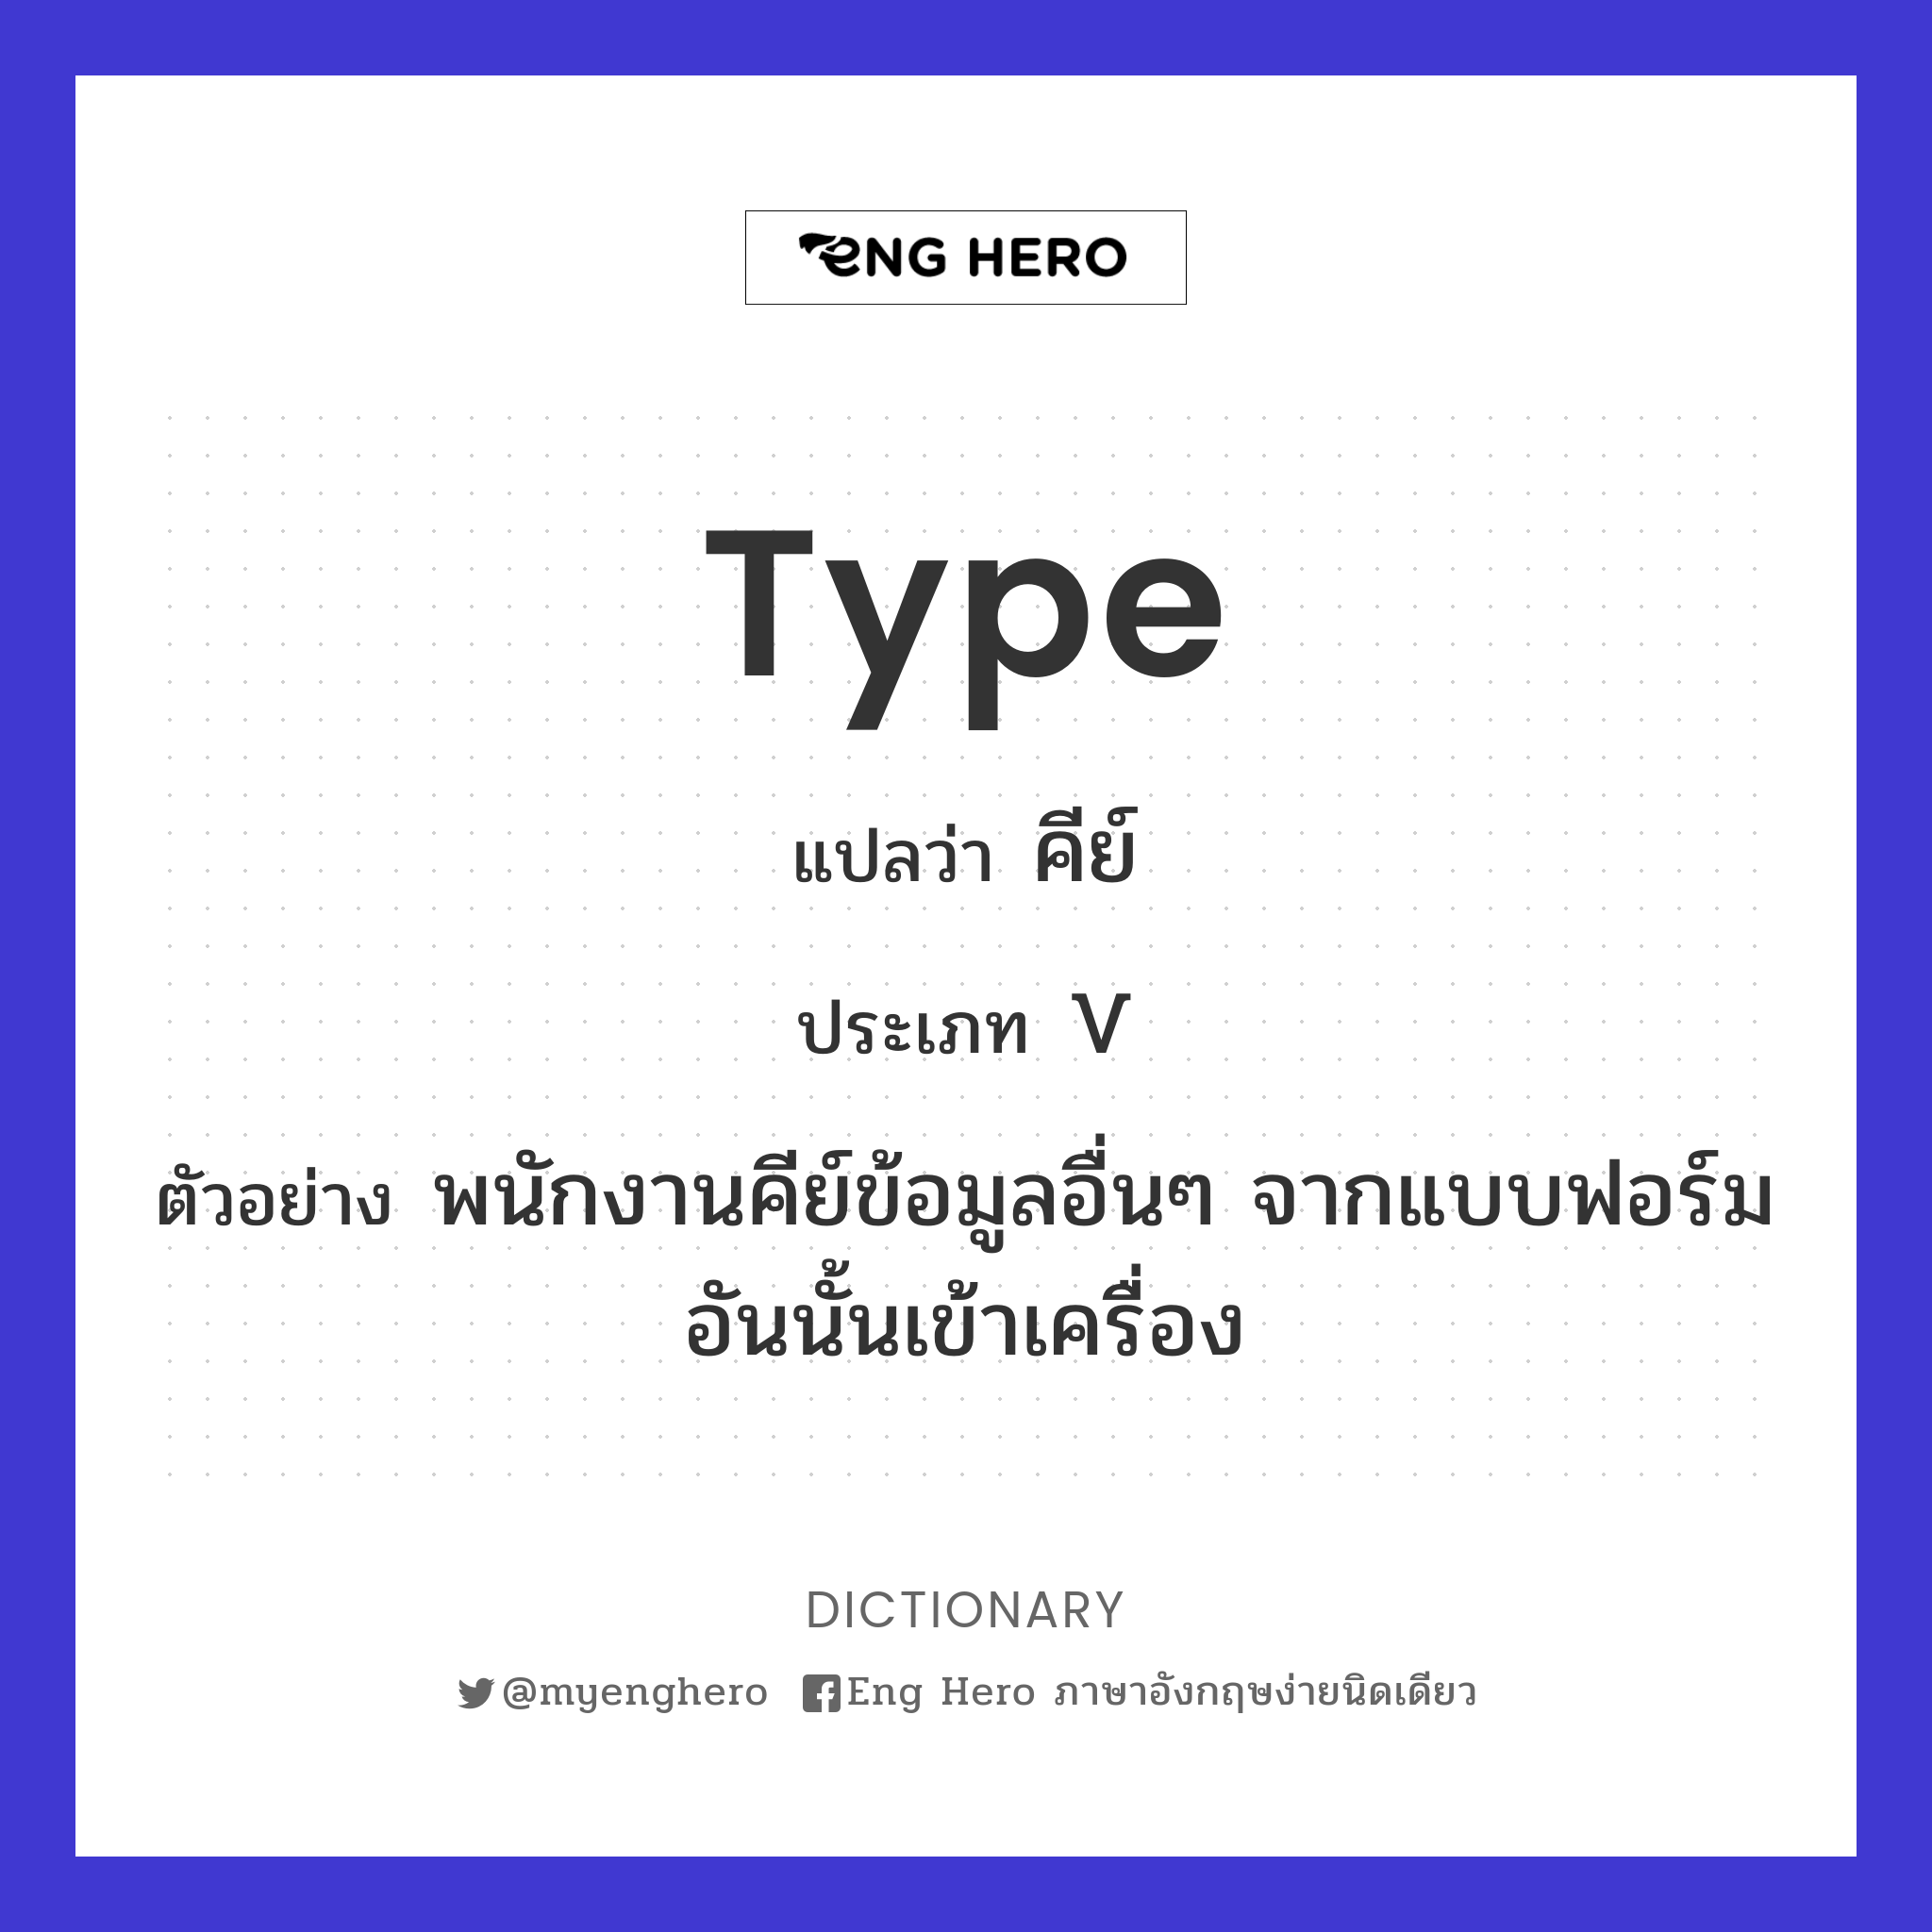 type